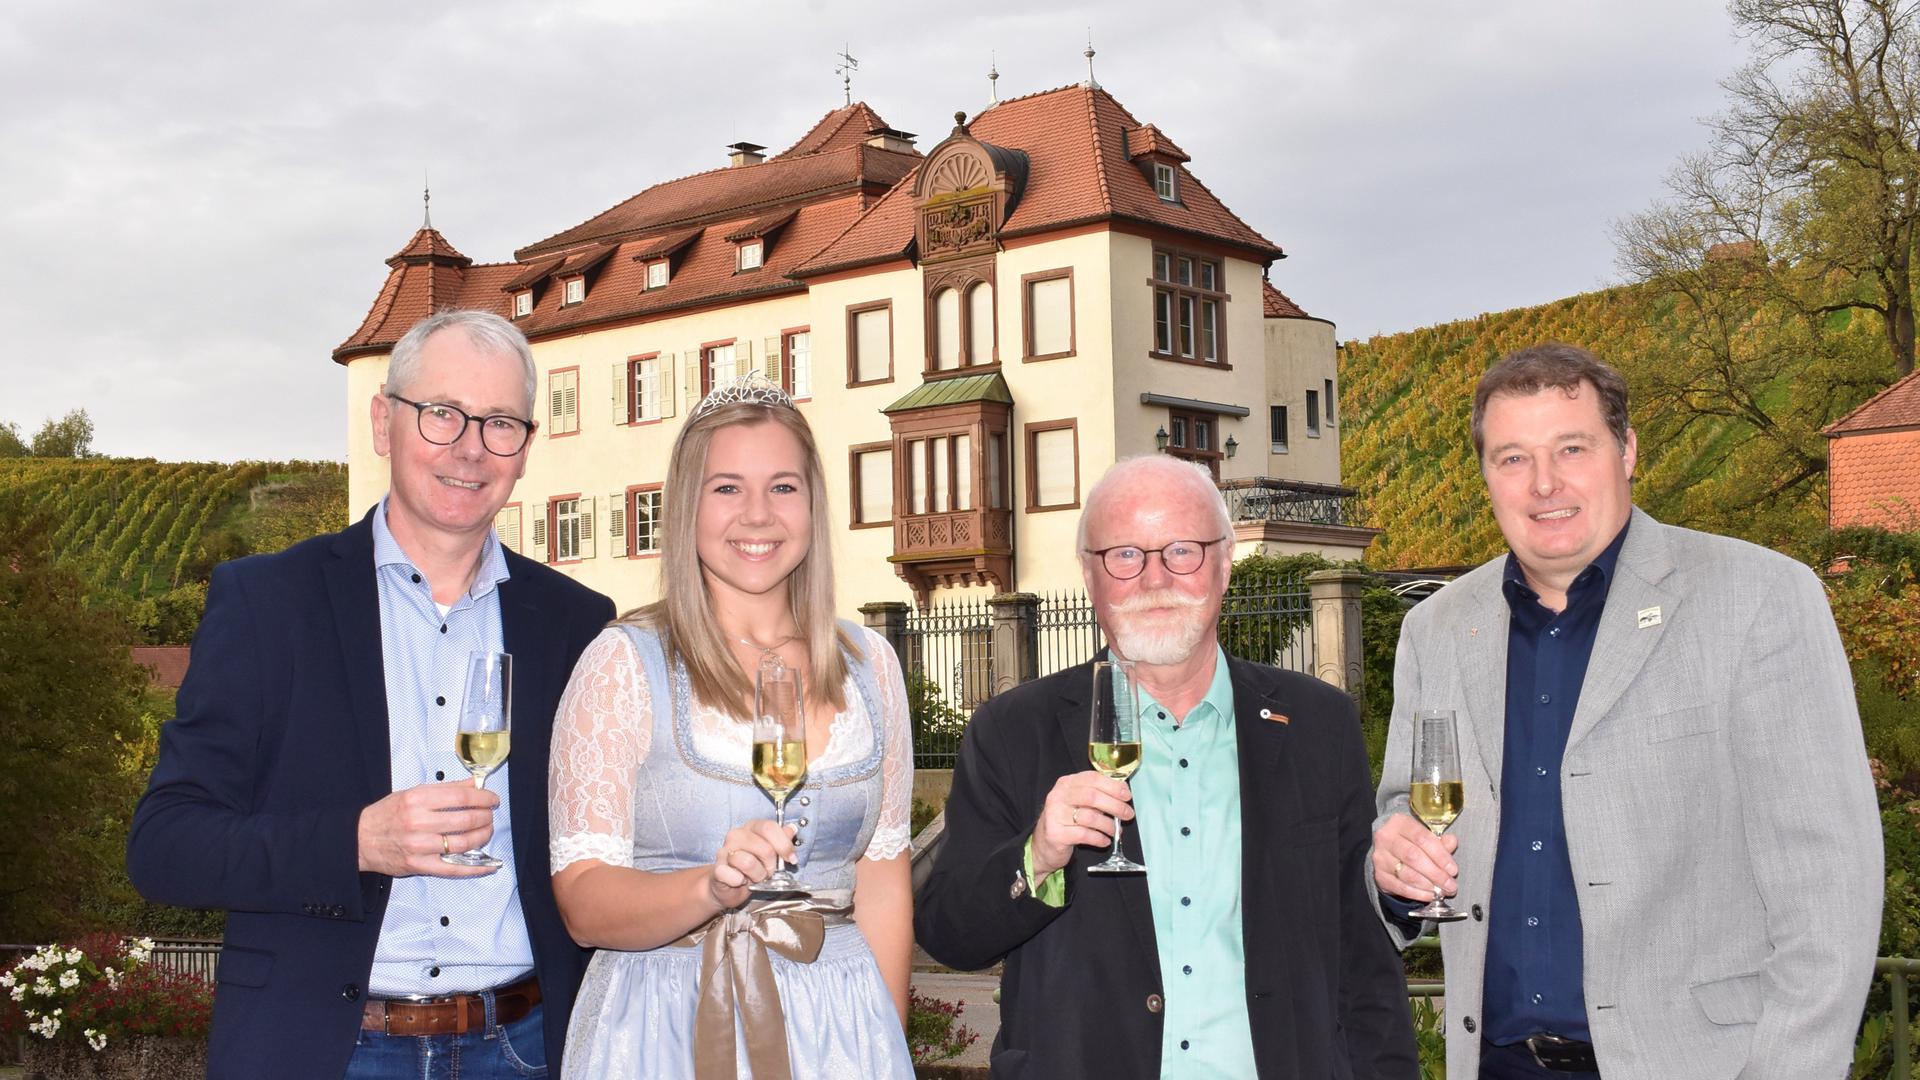 Als Ortenauer Weinprinzessin vertritt Alisa Höll den Rebländer Wein als einen von vielen Weinen aus dem Weinbaugebiet Ortenau. Daher fordert Klaus Bloedt-Werner (Zweiter von rechts) einen eigenen Weinrepräsentanten für den Reblandwein. Ralf Schäfer von der WG (links) zeigt sich aufgeschlossen. Rechts ist Rebland-Ortsvorsteher Ulrich Hildner zu sehen.